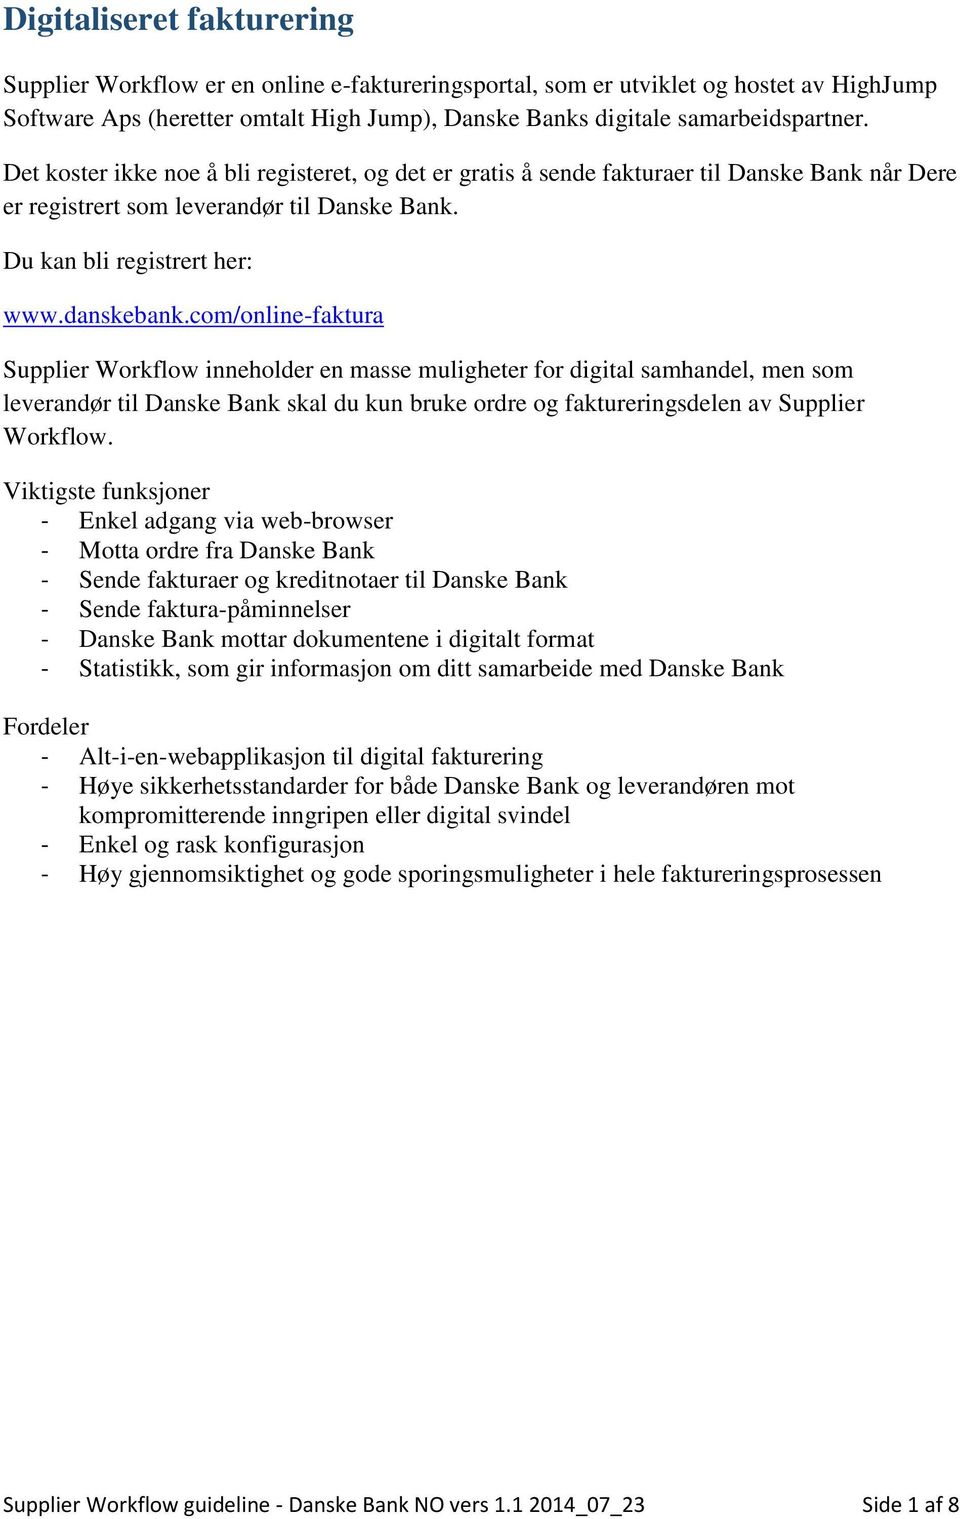 wwwdanskebankcom/online-faktura Supplier Workflow inneholder en masse muligheter for digital samhandel, men som leverandør til Danske Bank skal du kun bruke ordre og faktureringsdelen av Supplier